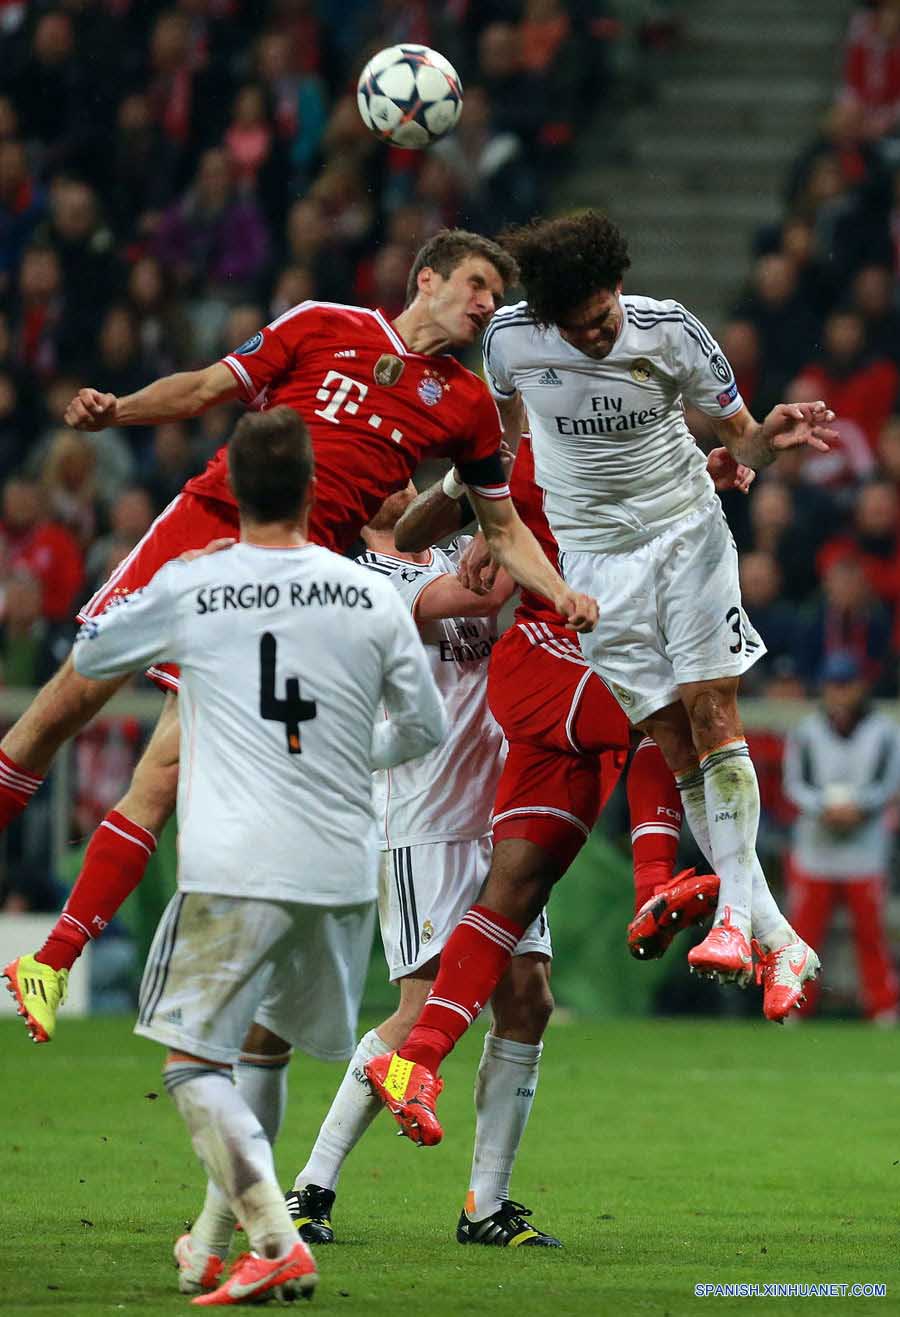 Fútbol: Real Madrid avanza a final de "Champions" tras golear al Bayern